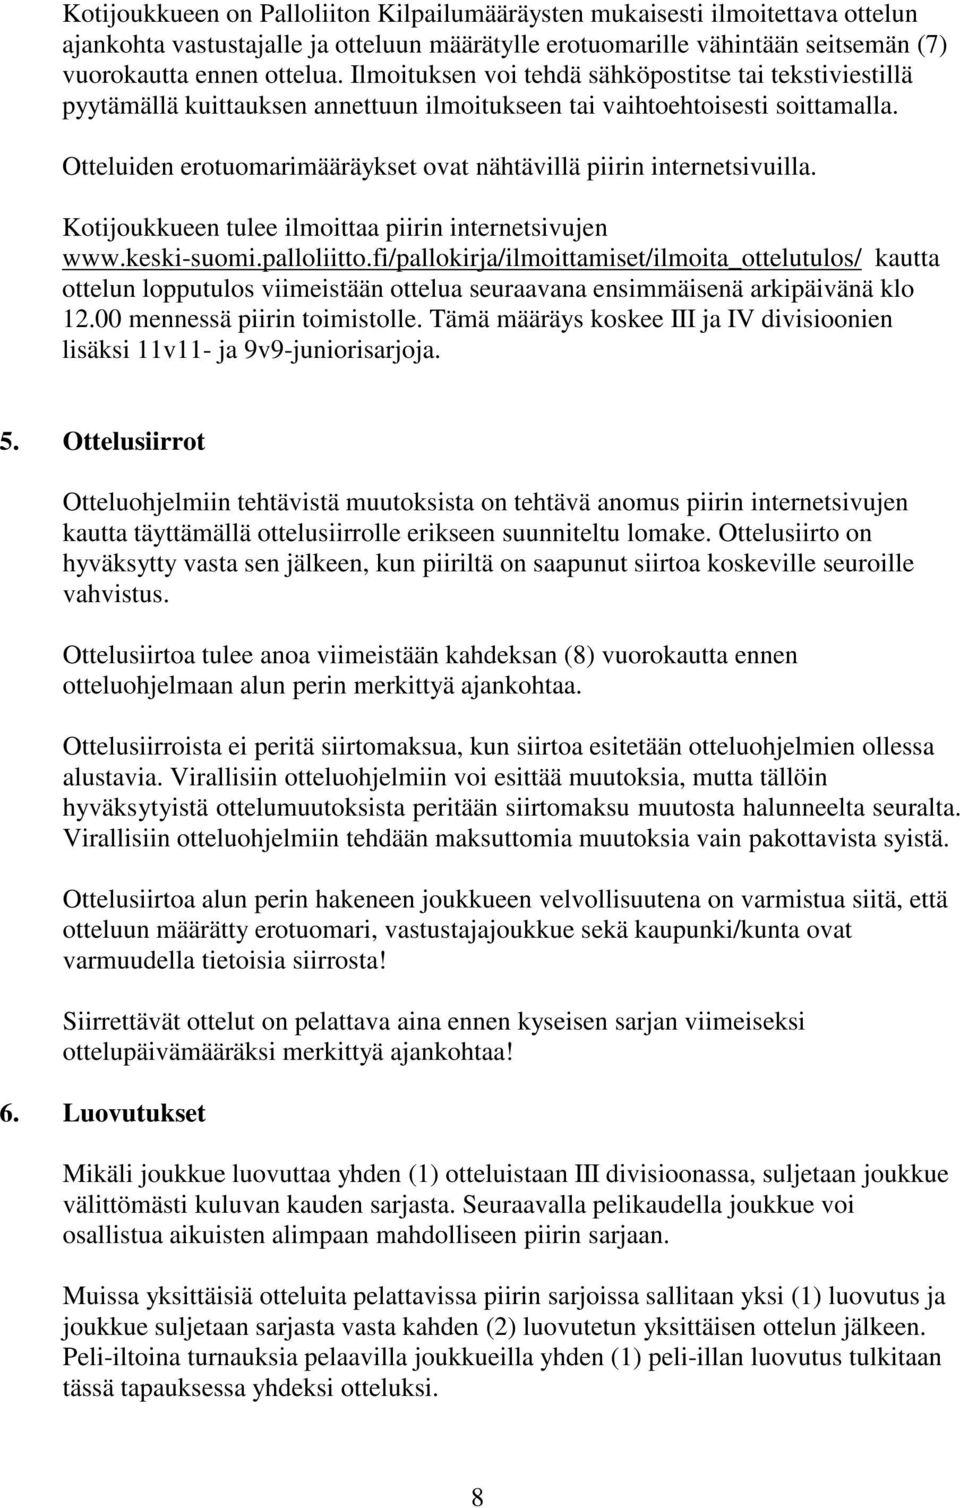 Otteluiden erotuomarimääräykset ovat nähtävillä piirin internetsivuilla. Kotijoukkueen tulee ilmoittaa piirin internetsivujen www.keski-suomi.palloliitto.